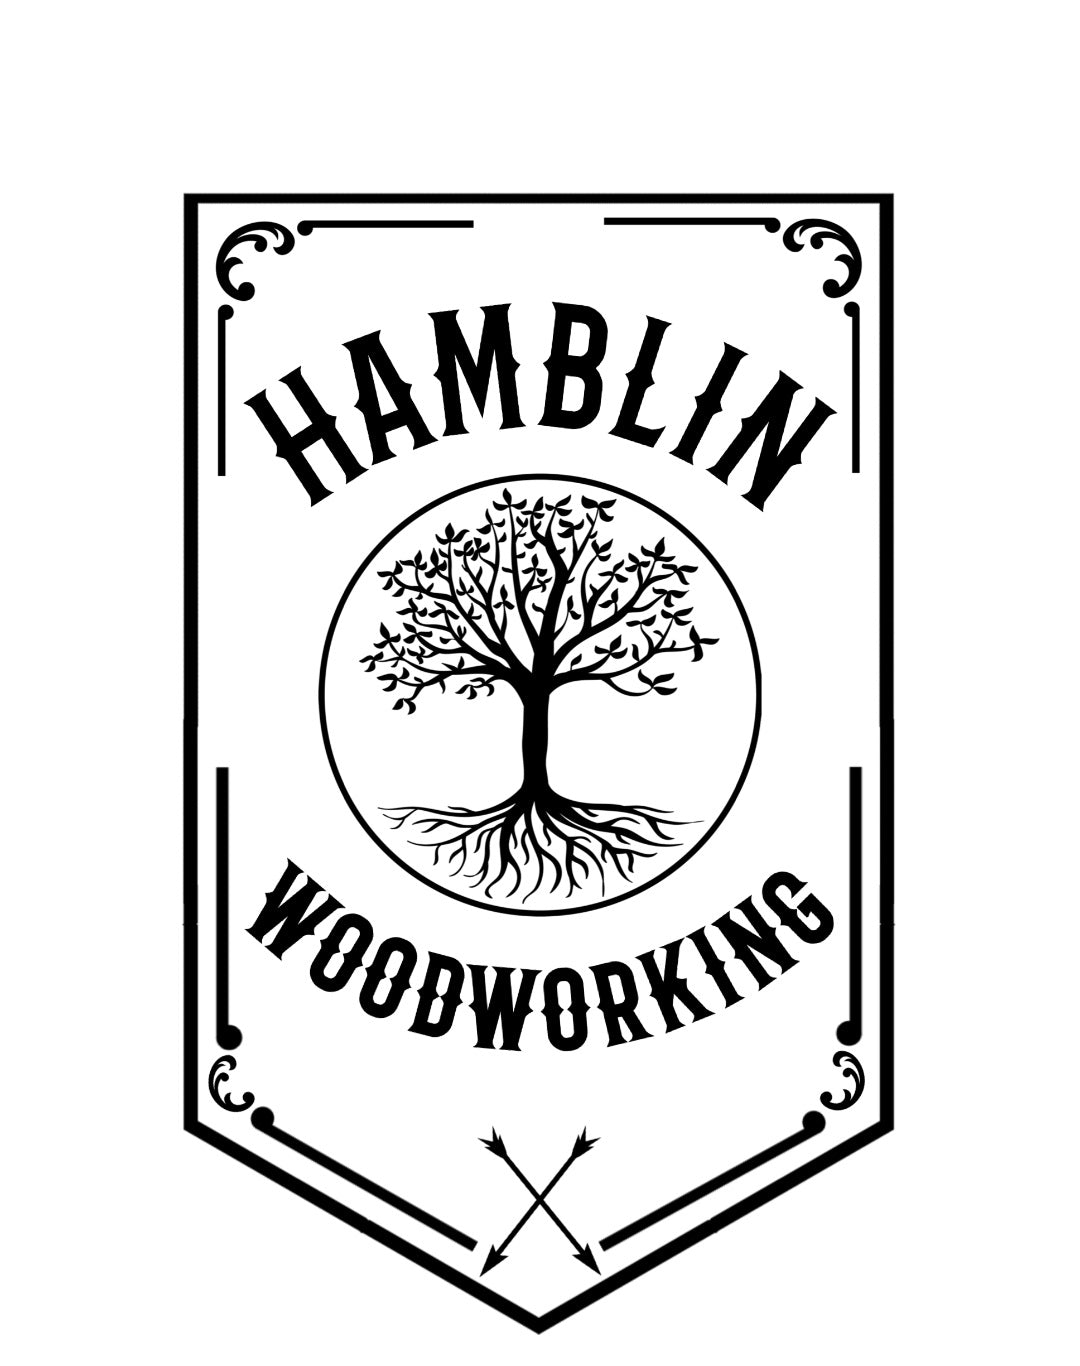 Hamblin Woodworking